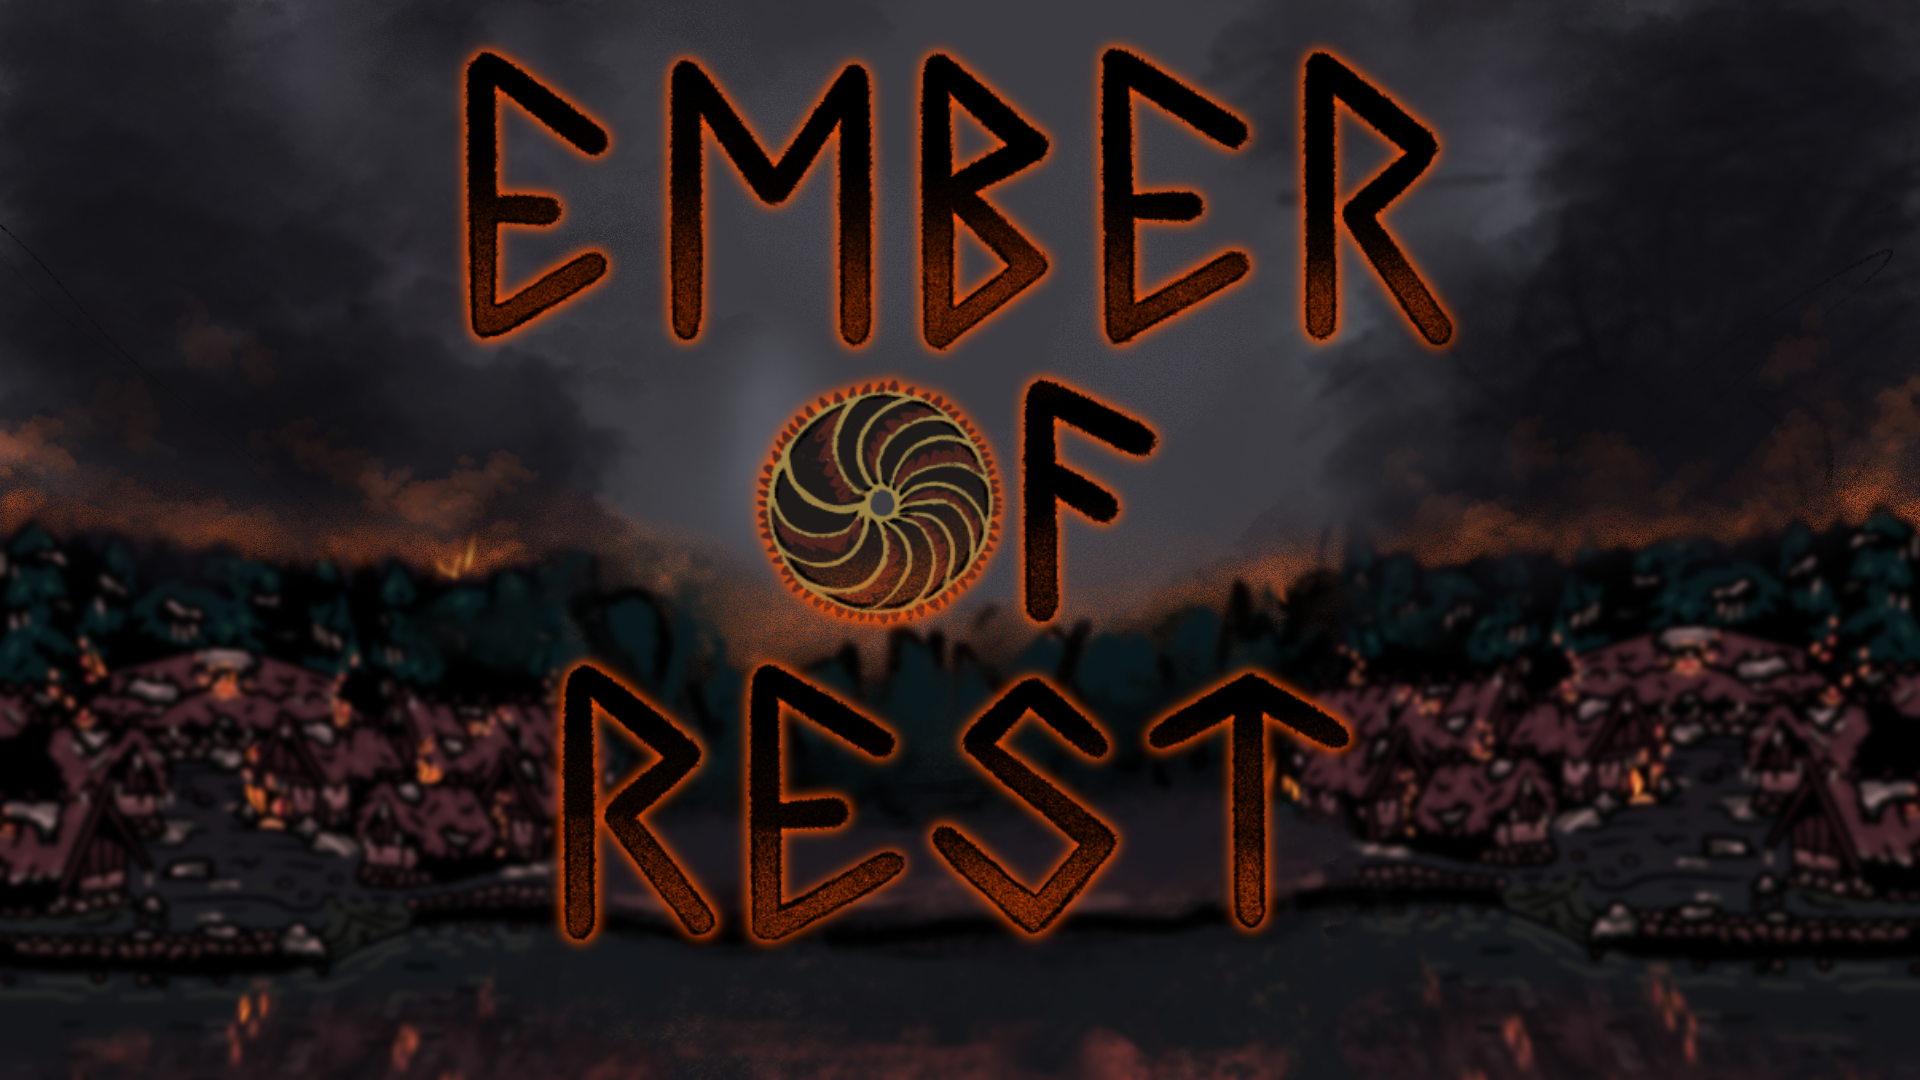 Ember of Rest